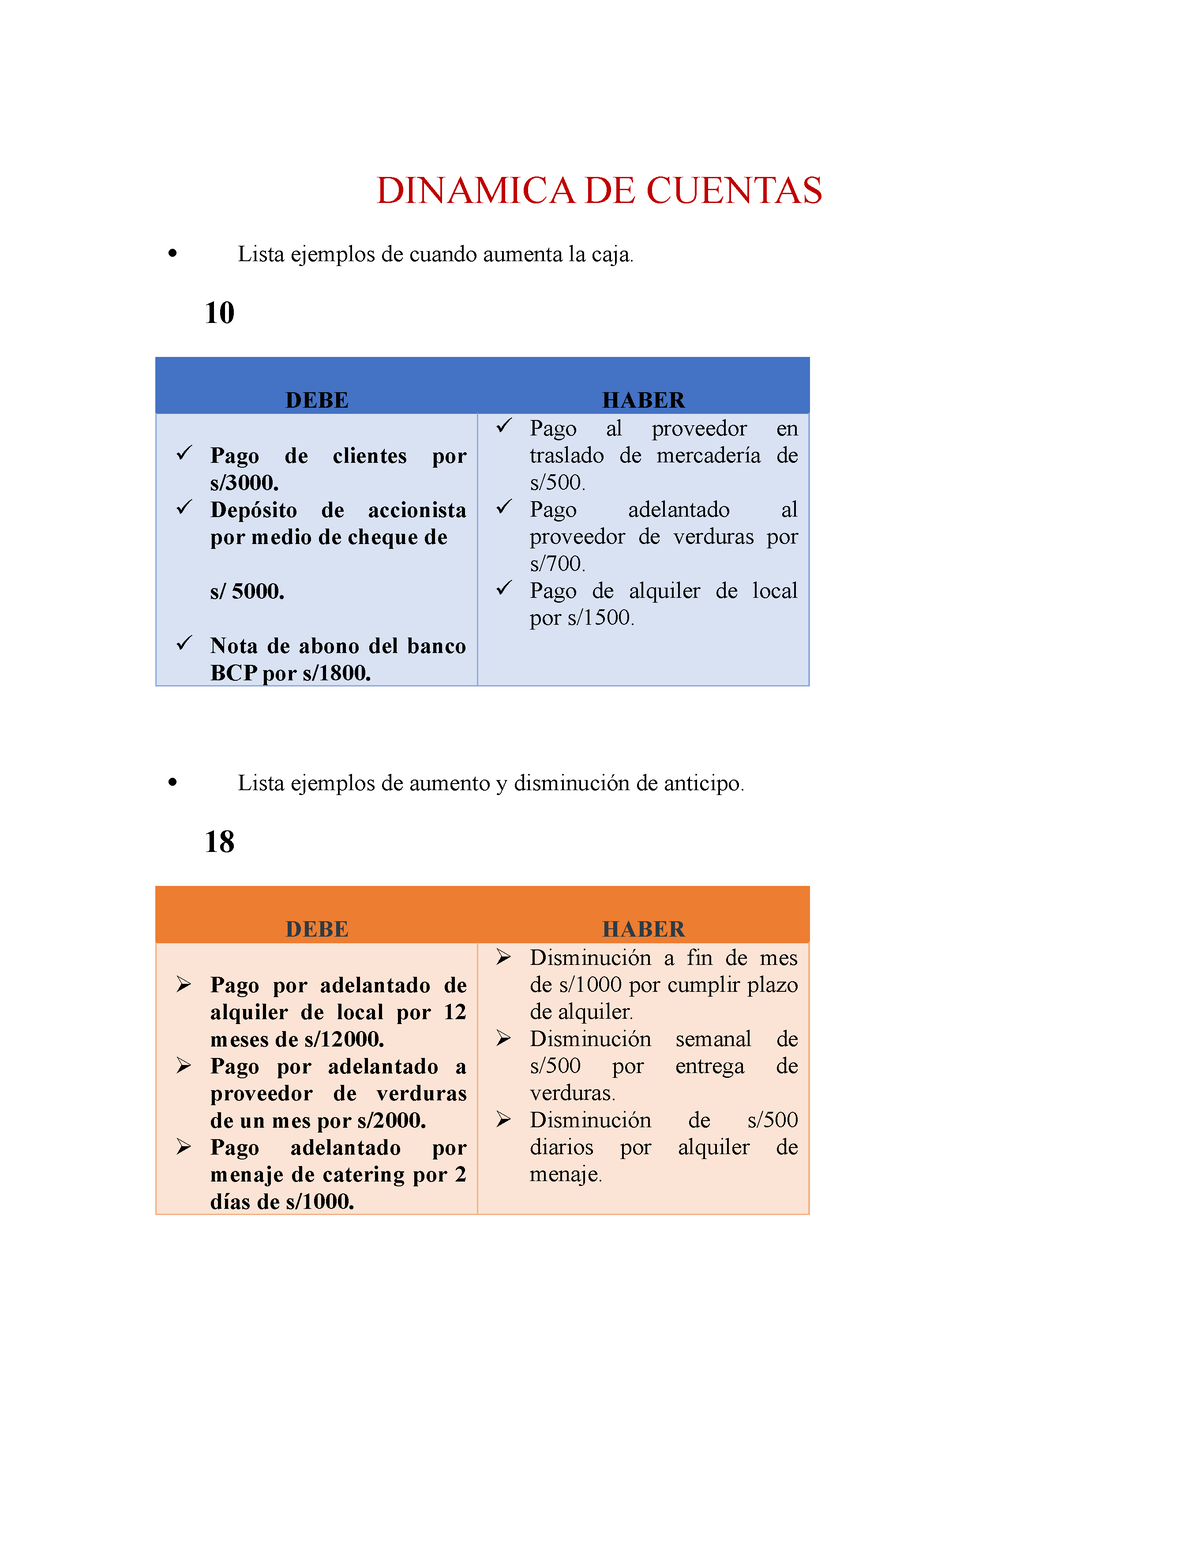 Dinamica De Cuentas Semana 6 Dinamica De Cuentas Lista Ejemplos De Cuando Aumenta La Caja 10 0940